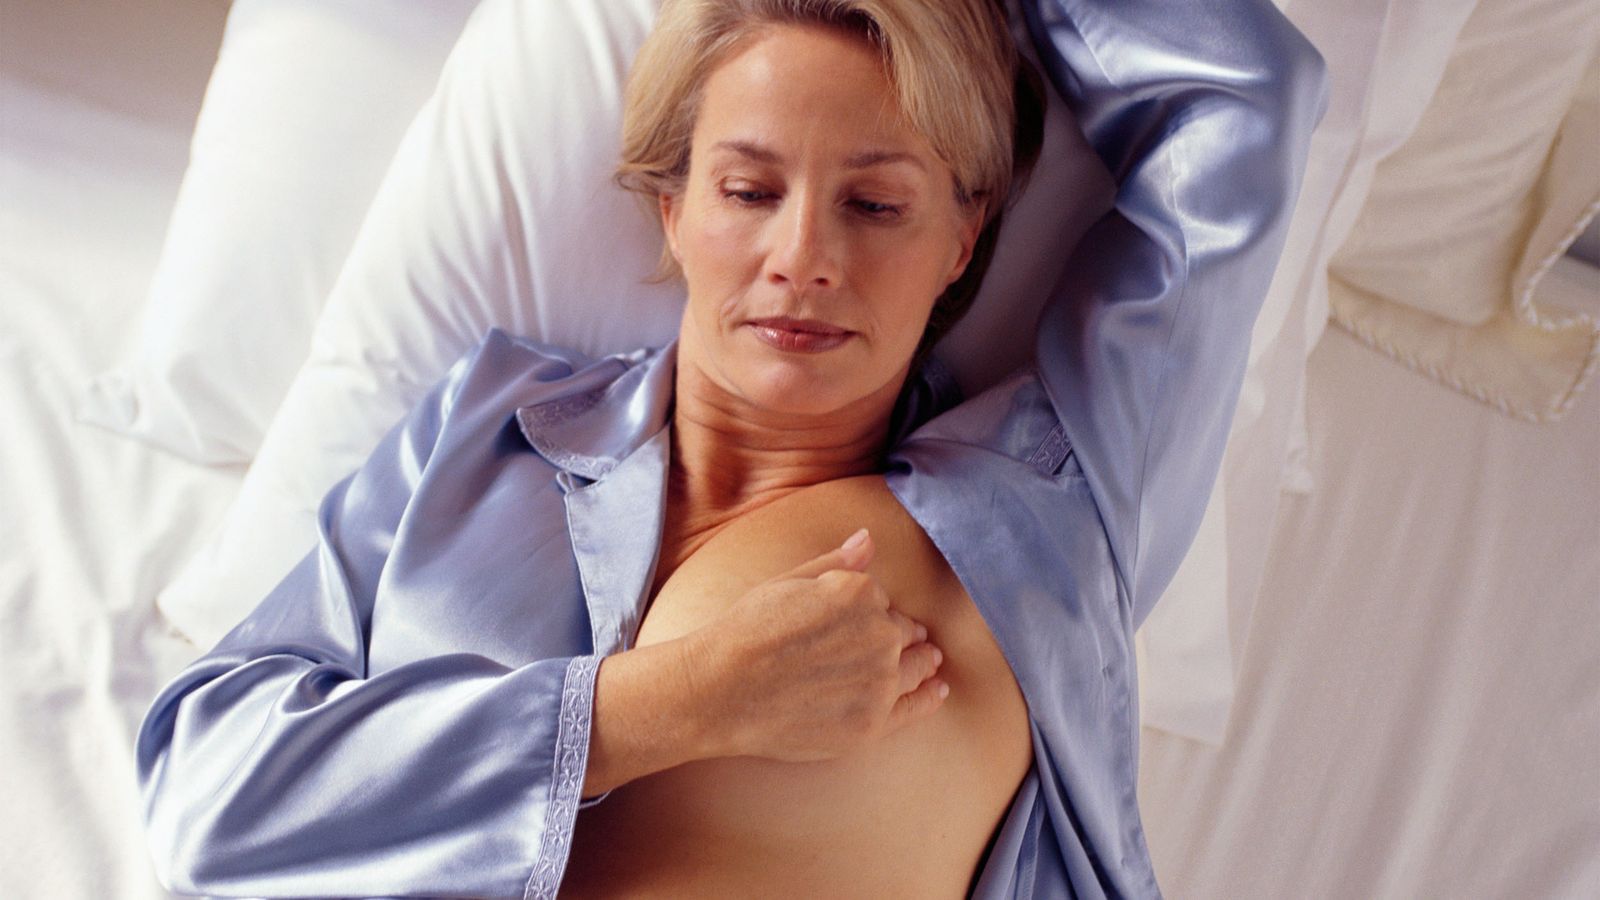 Thermographie bei Brustkrebs